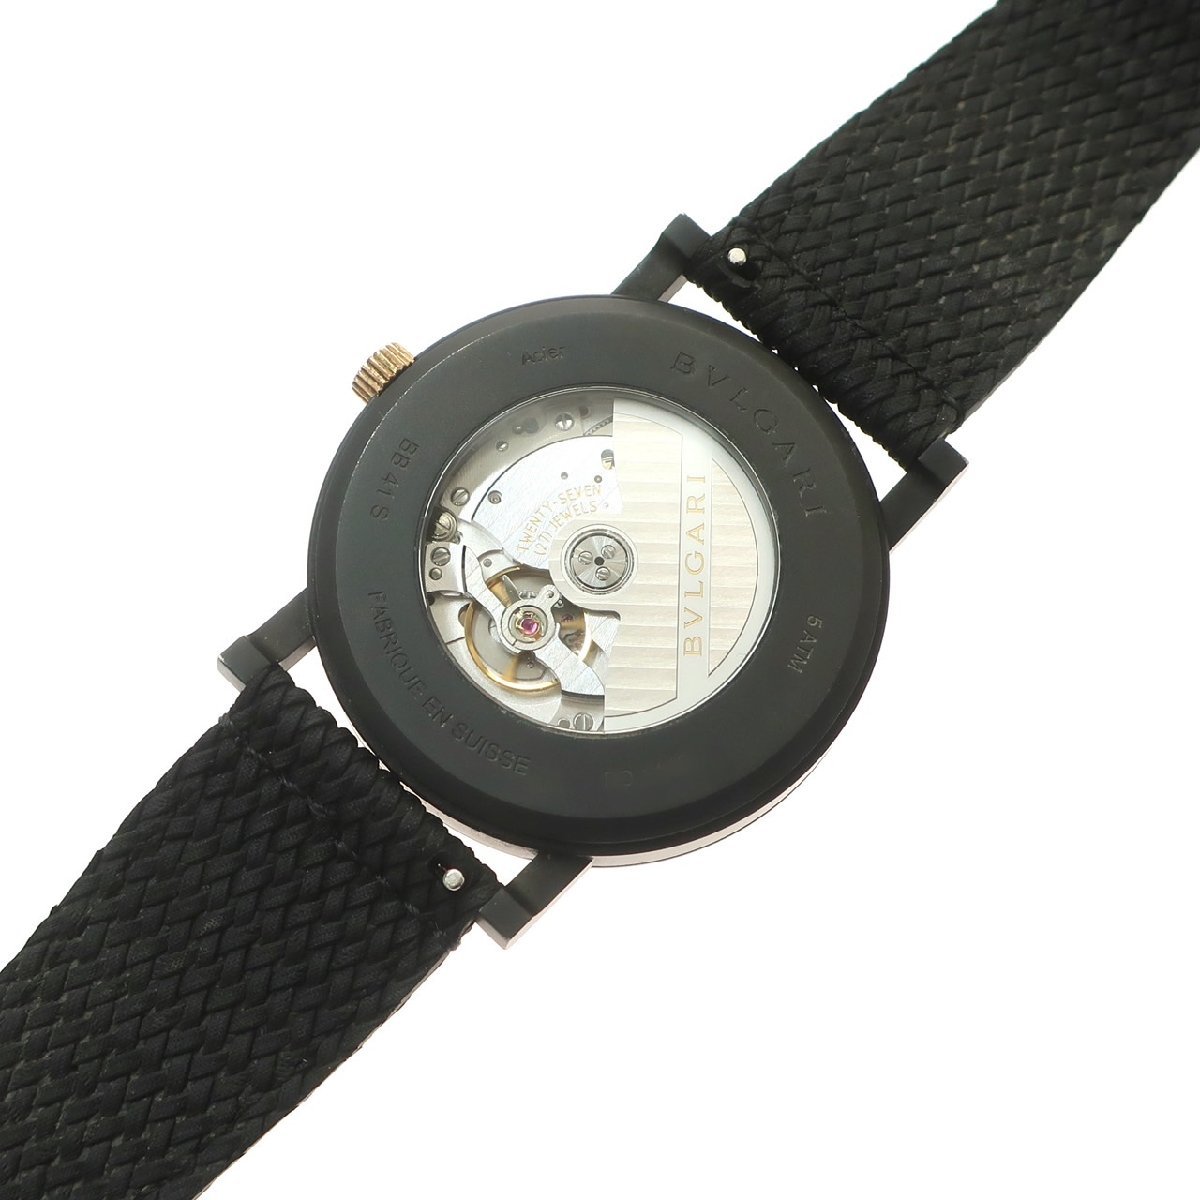 [ превосходный товар ]BVLGARI BVLGARY BVLGARY BVLGARY Solotempo 102929 Date нержавеющая сталь самозаводящиеся часы черный циферблат чёрный мужские наручные часы 